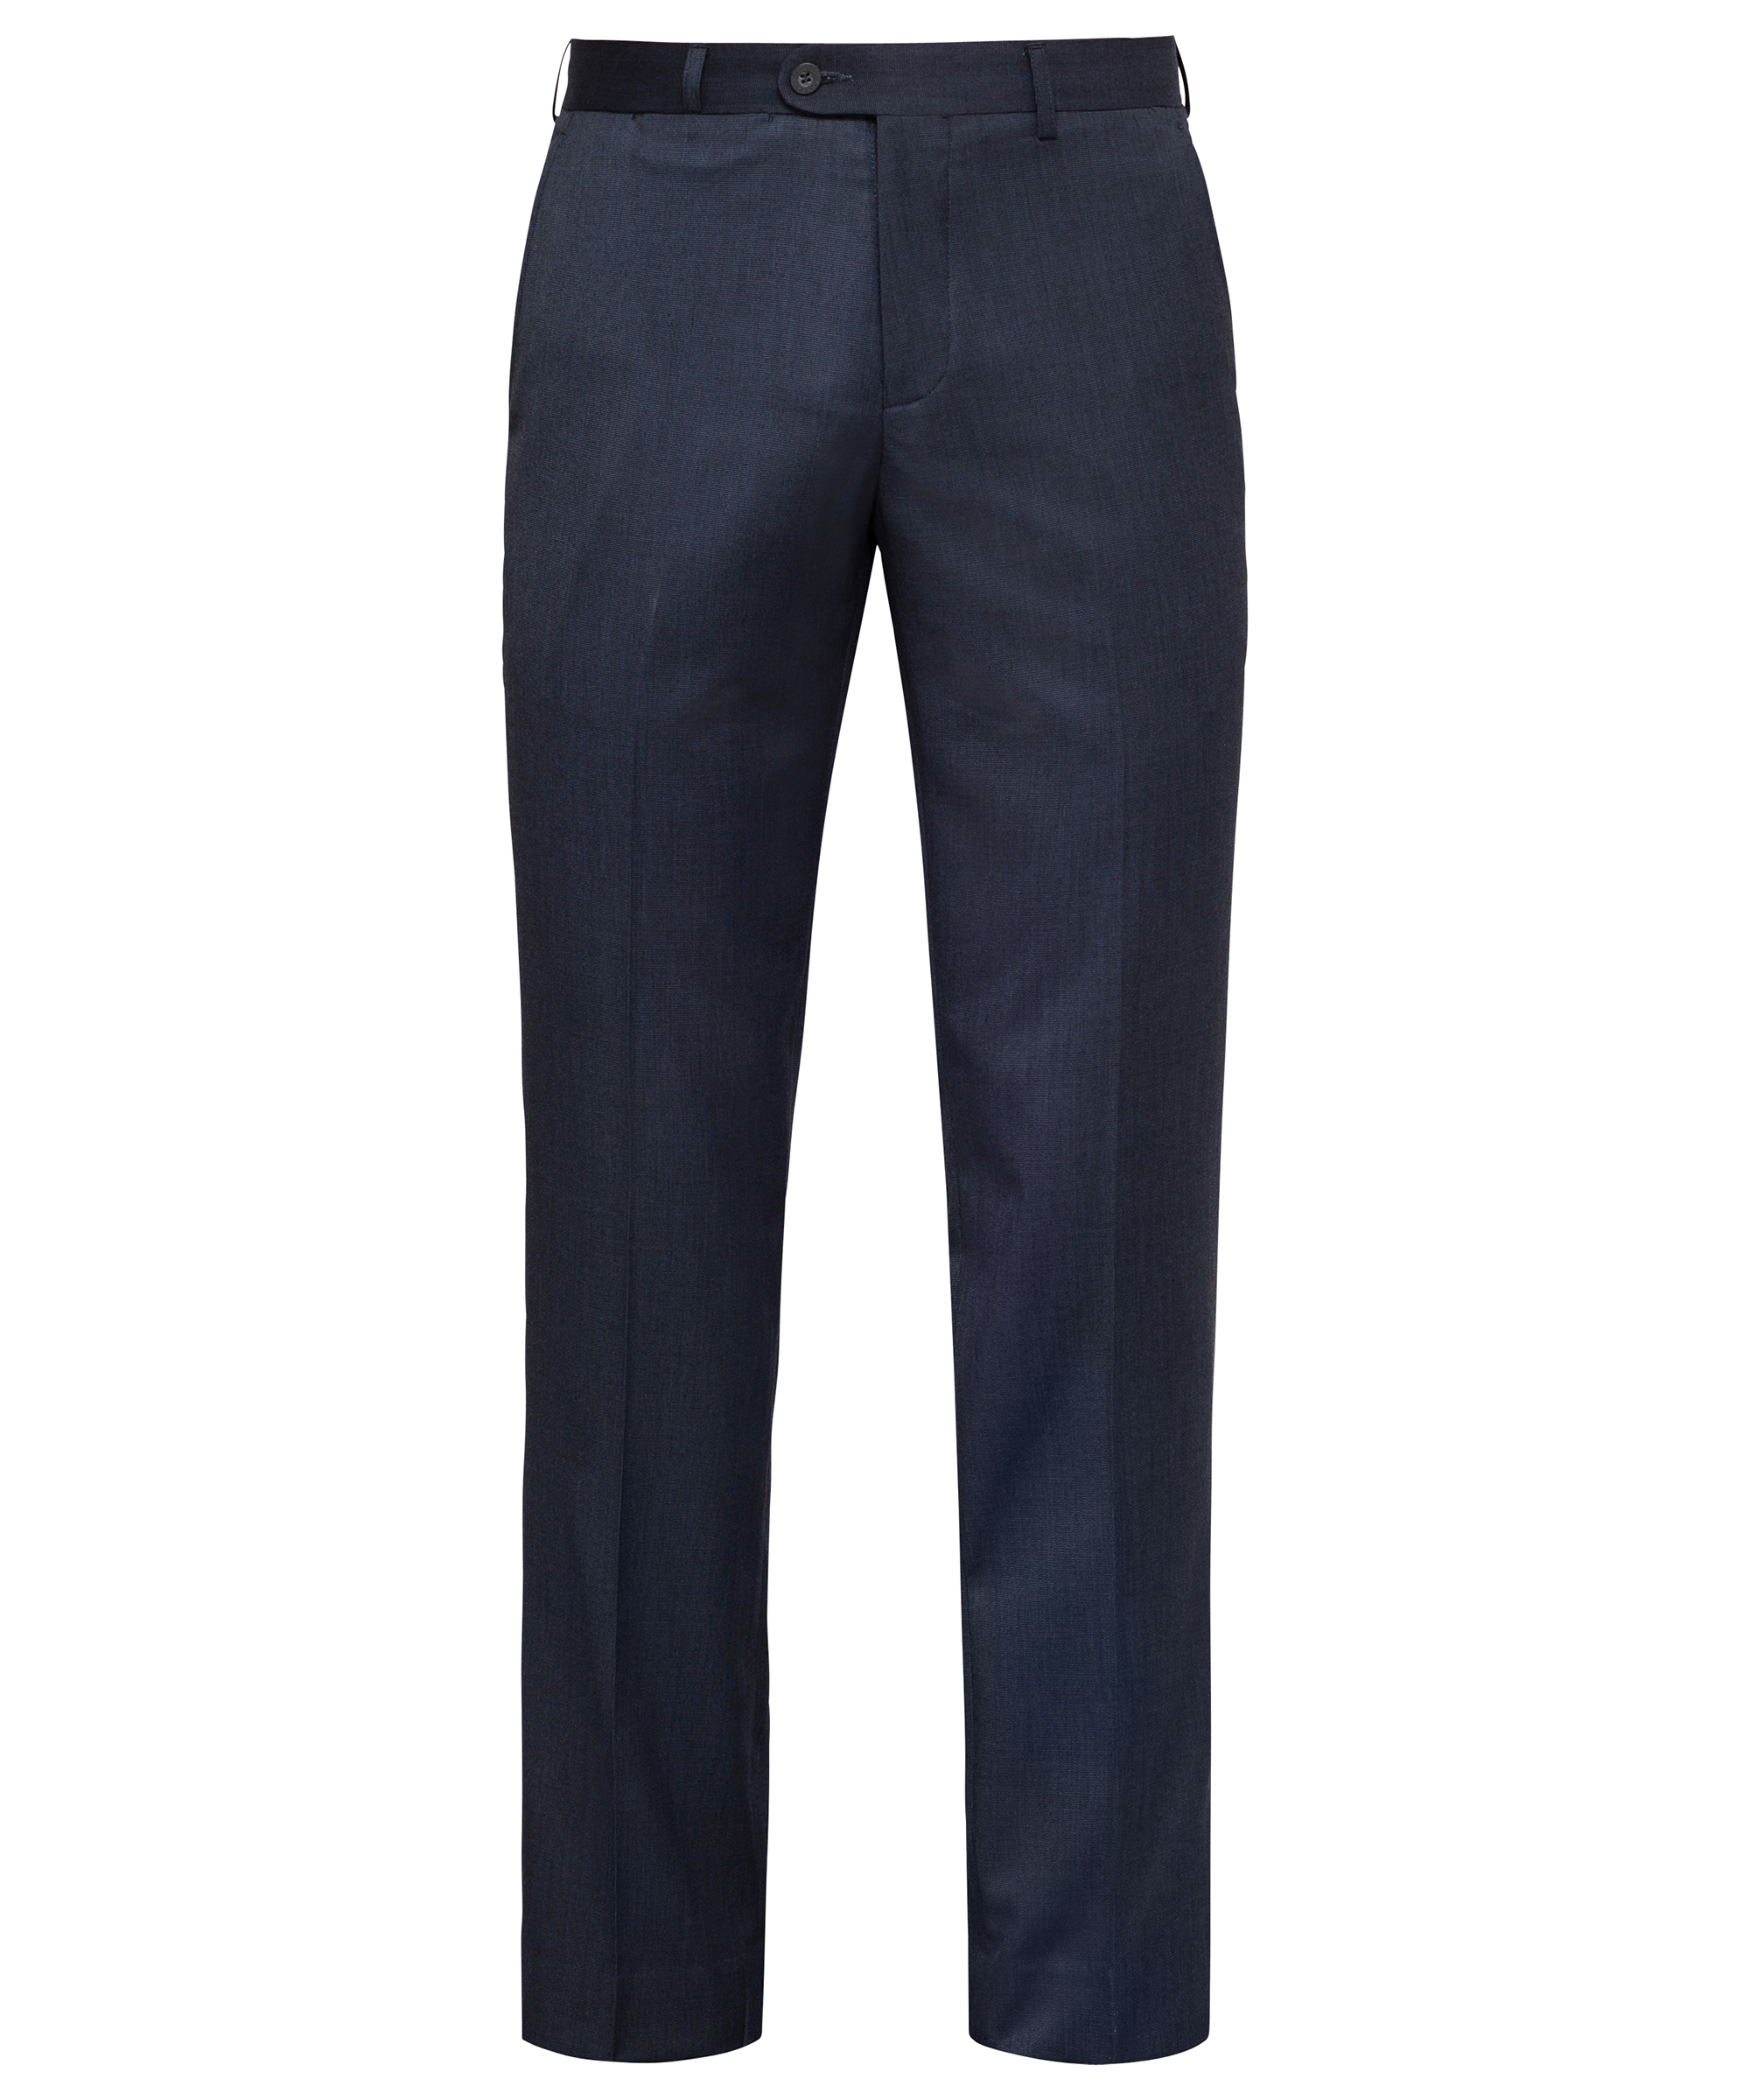 Easy Care Flat Front Trouser : Bracks Trousers : PVHBA Businesswear